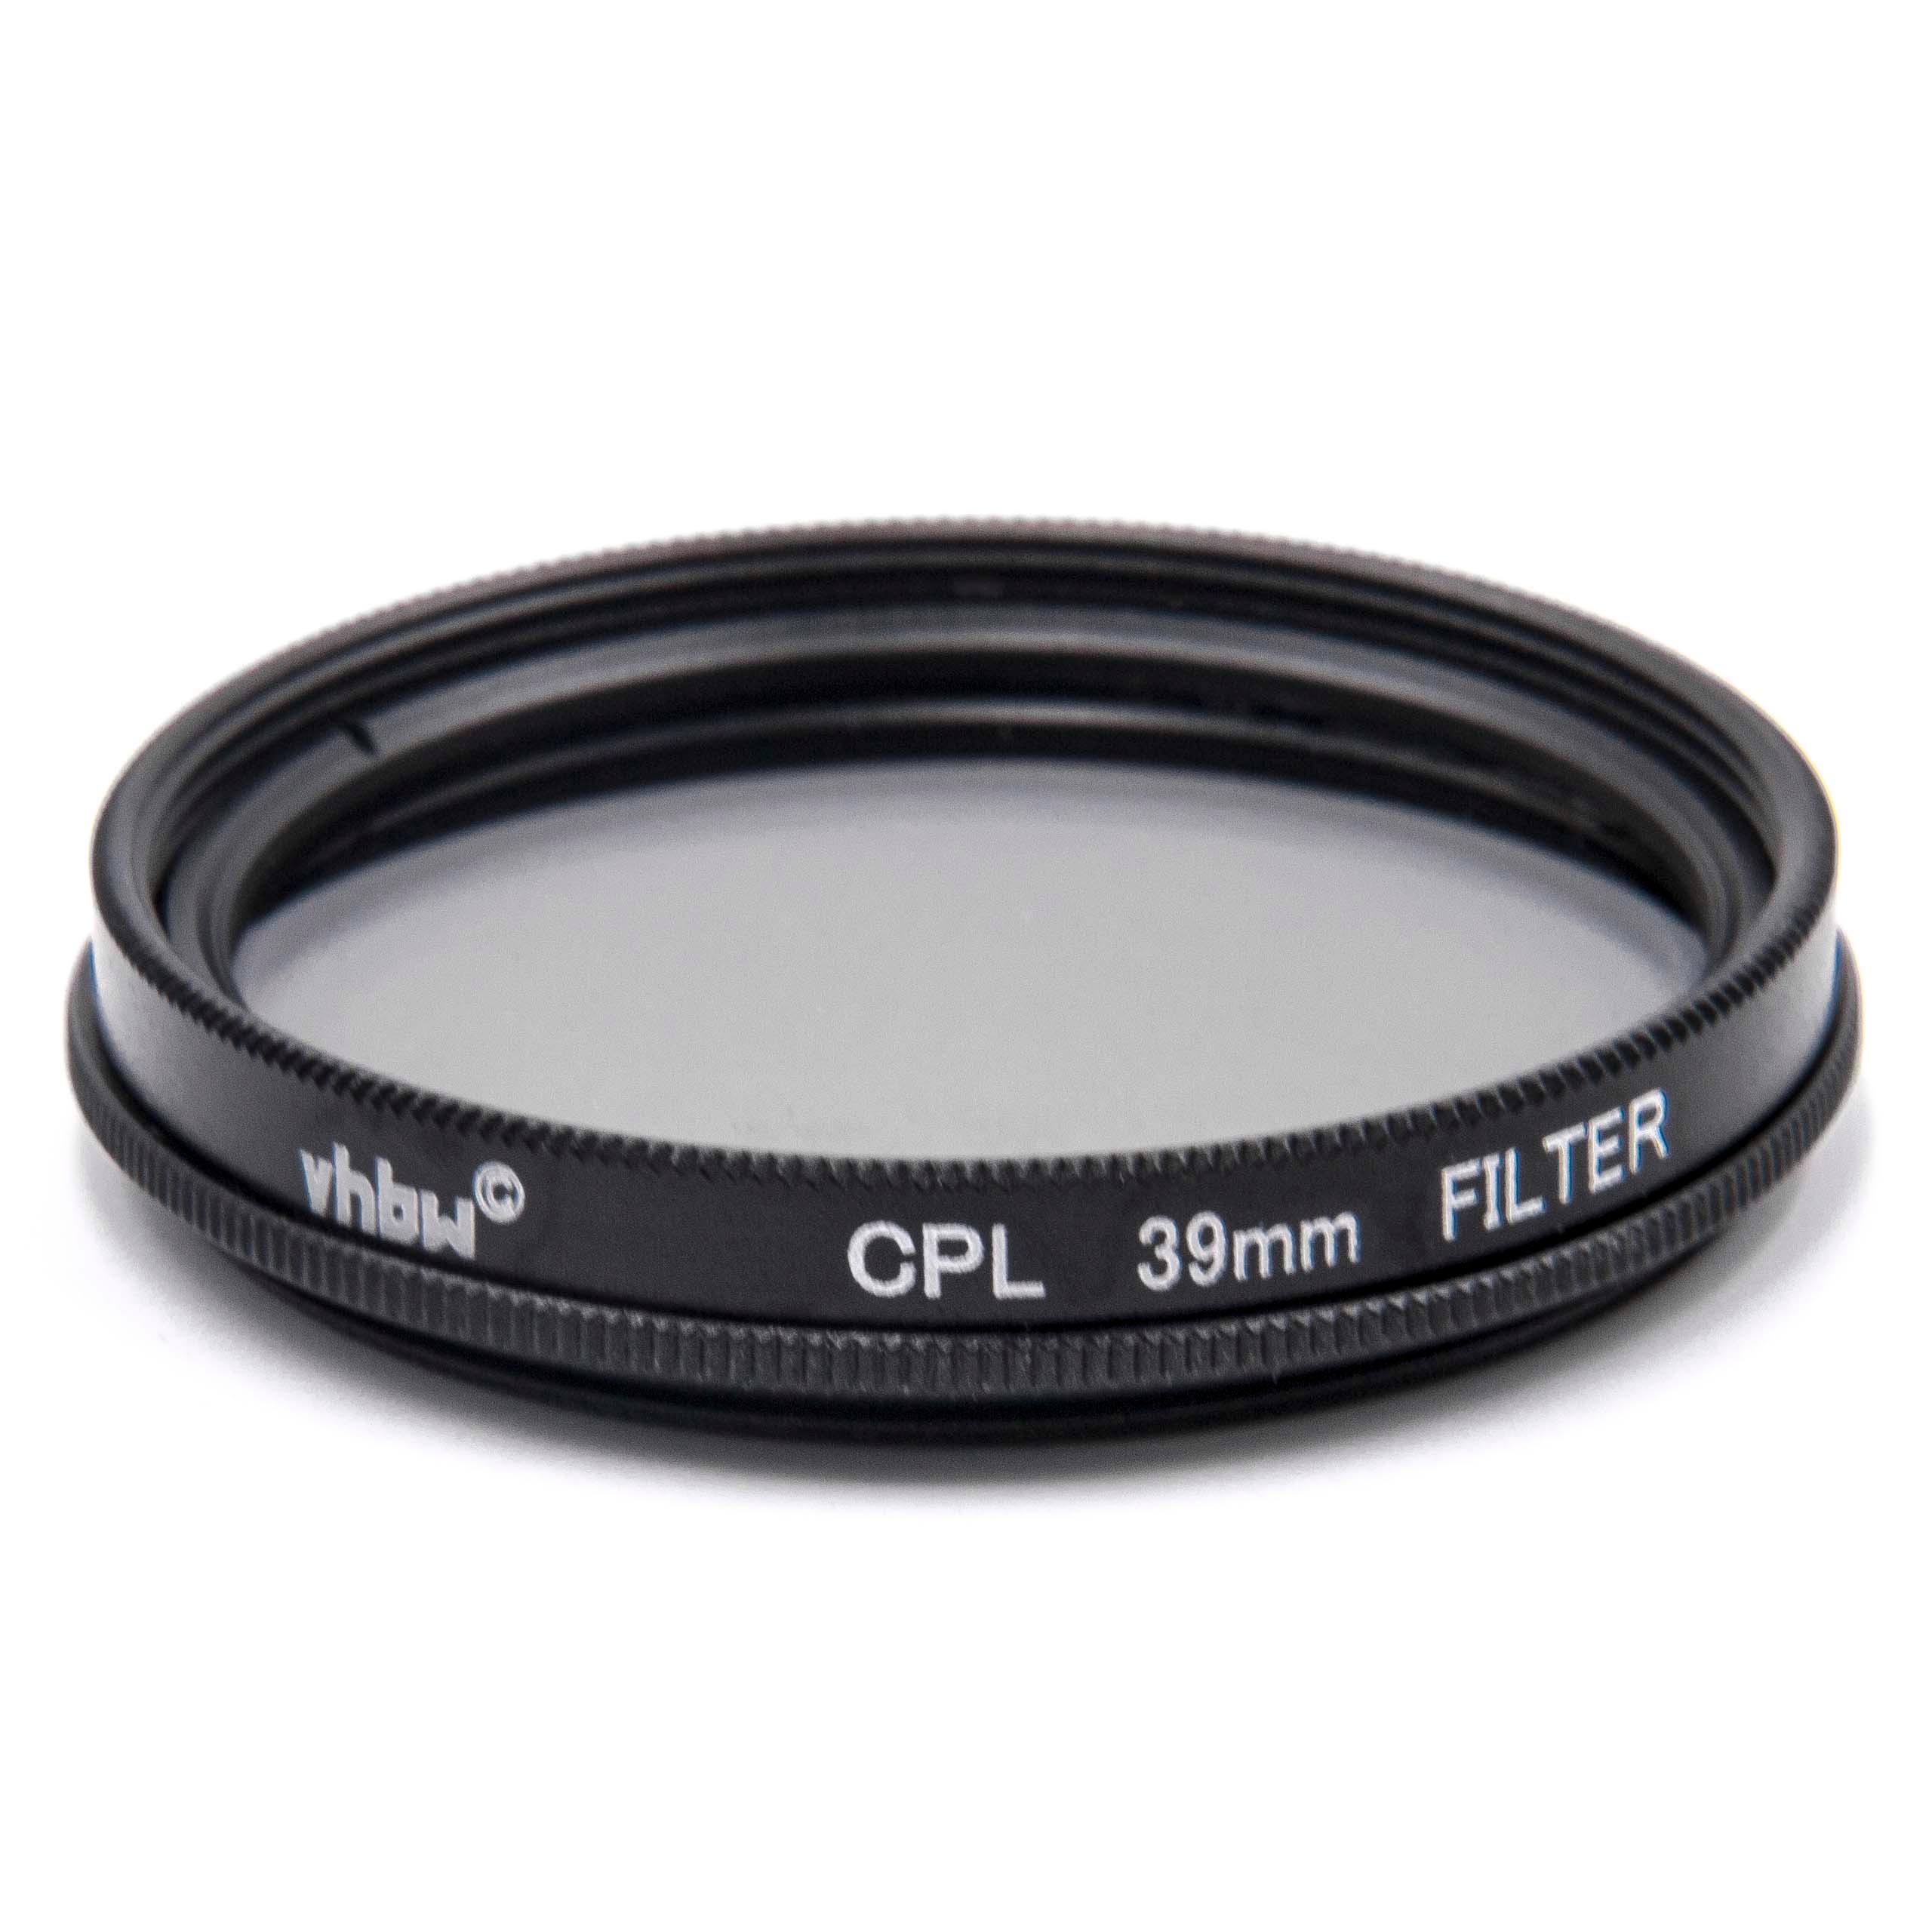 Filtre polarisant pour appareil photo et objectif de diamètre 39 mm - Filtre CPL